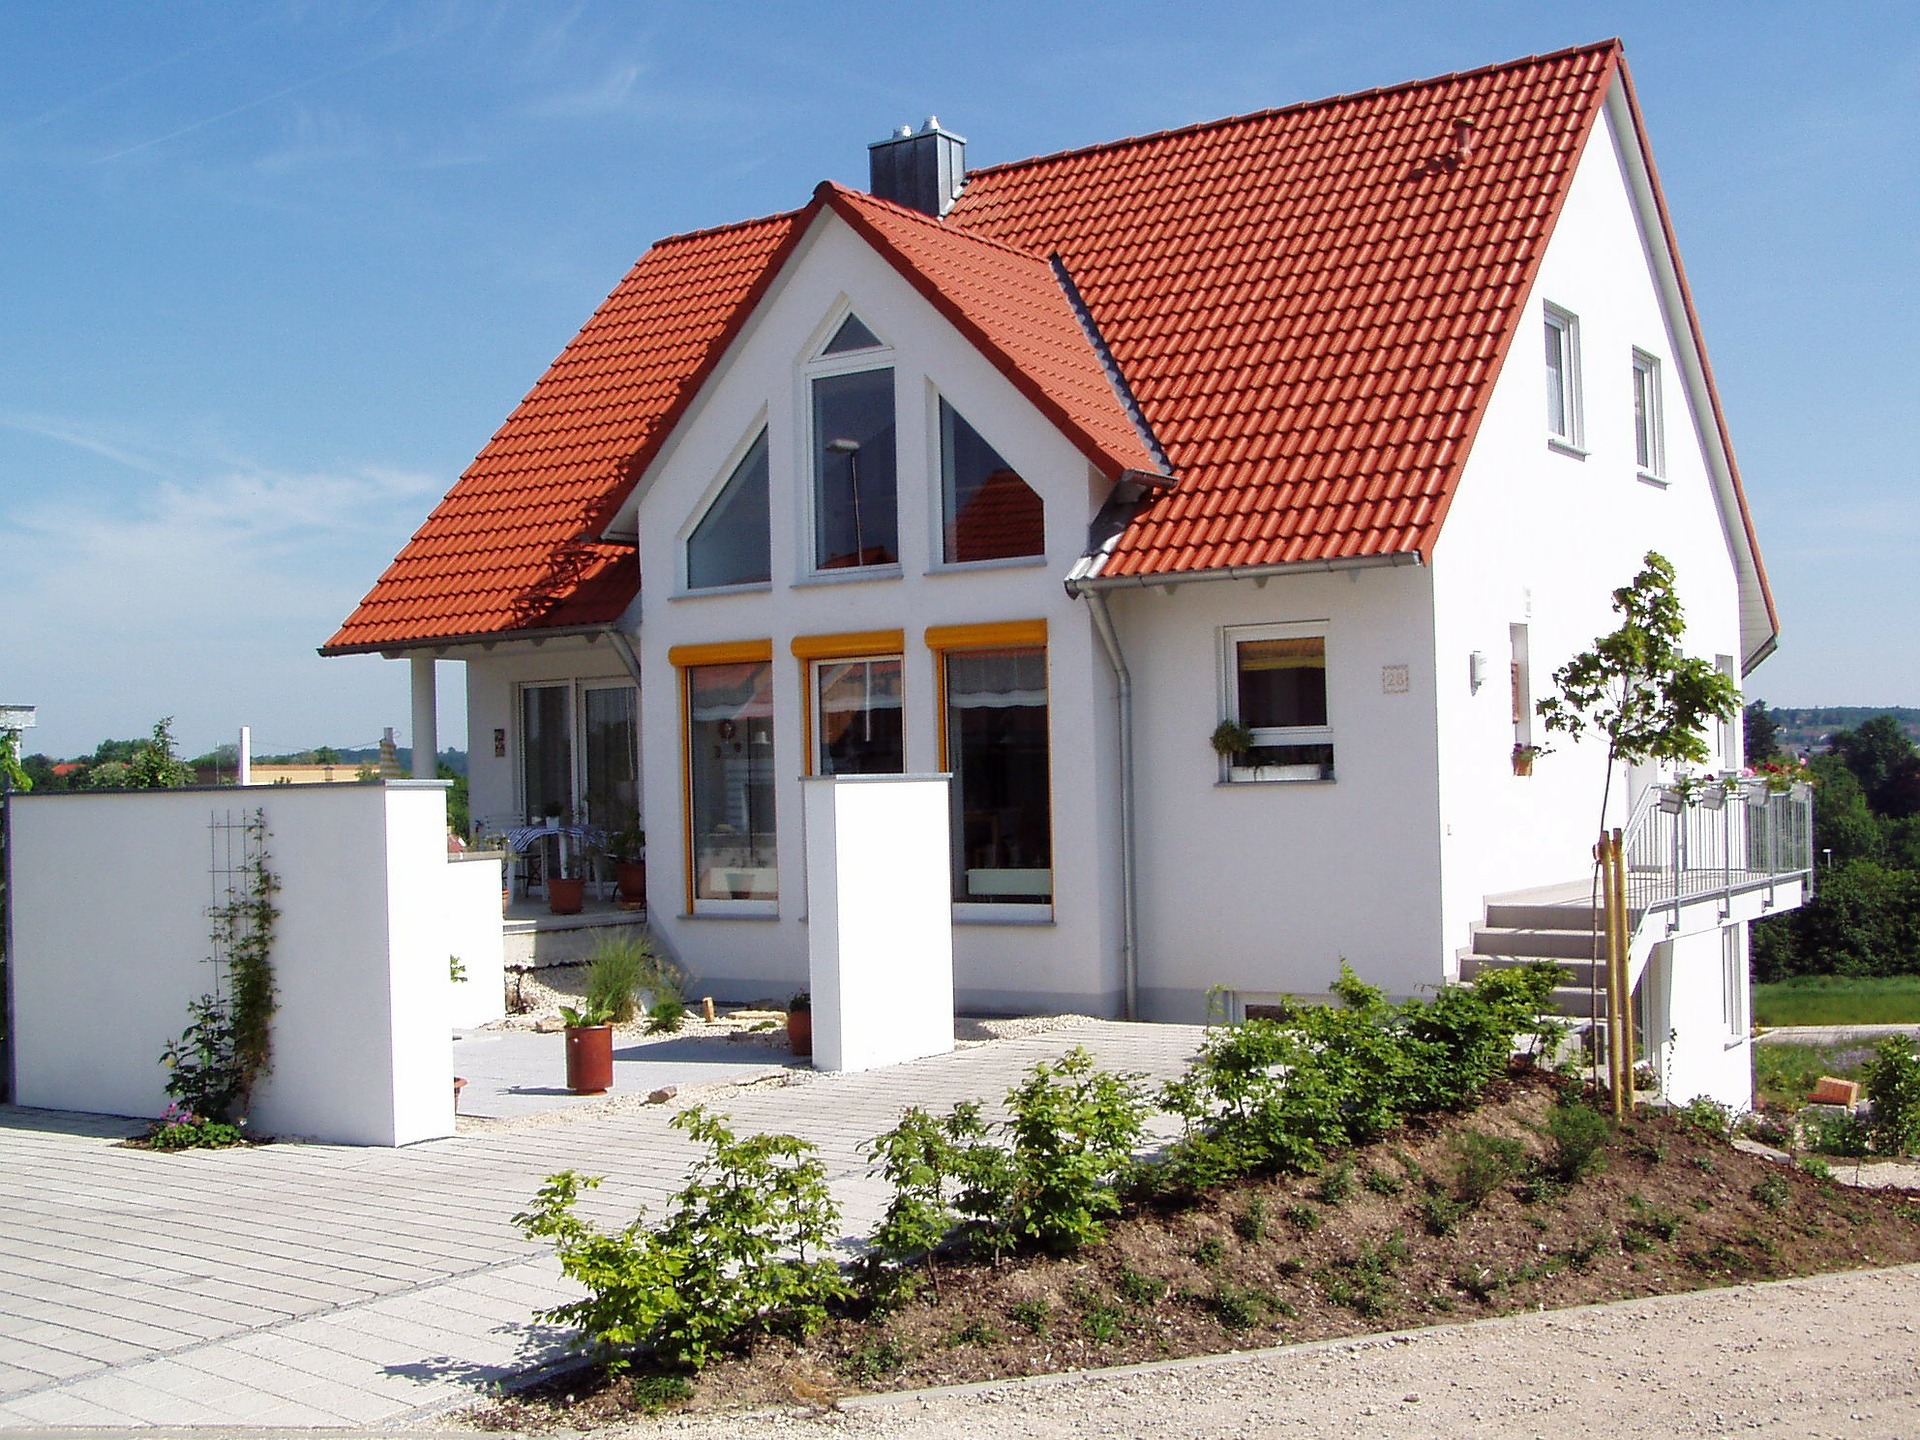 Weißes Einfamilienhaus mit Vorgarten.